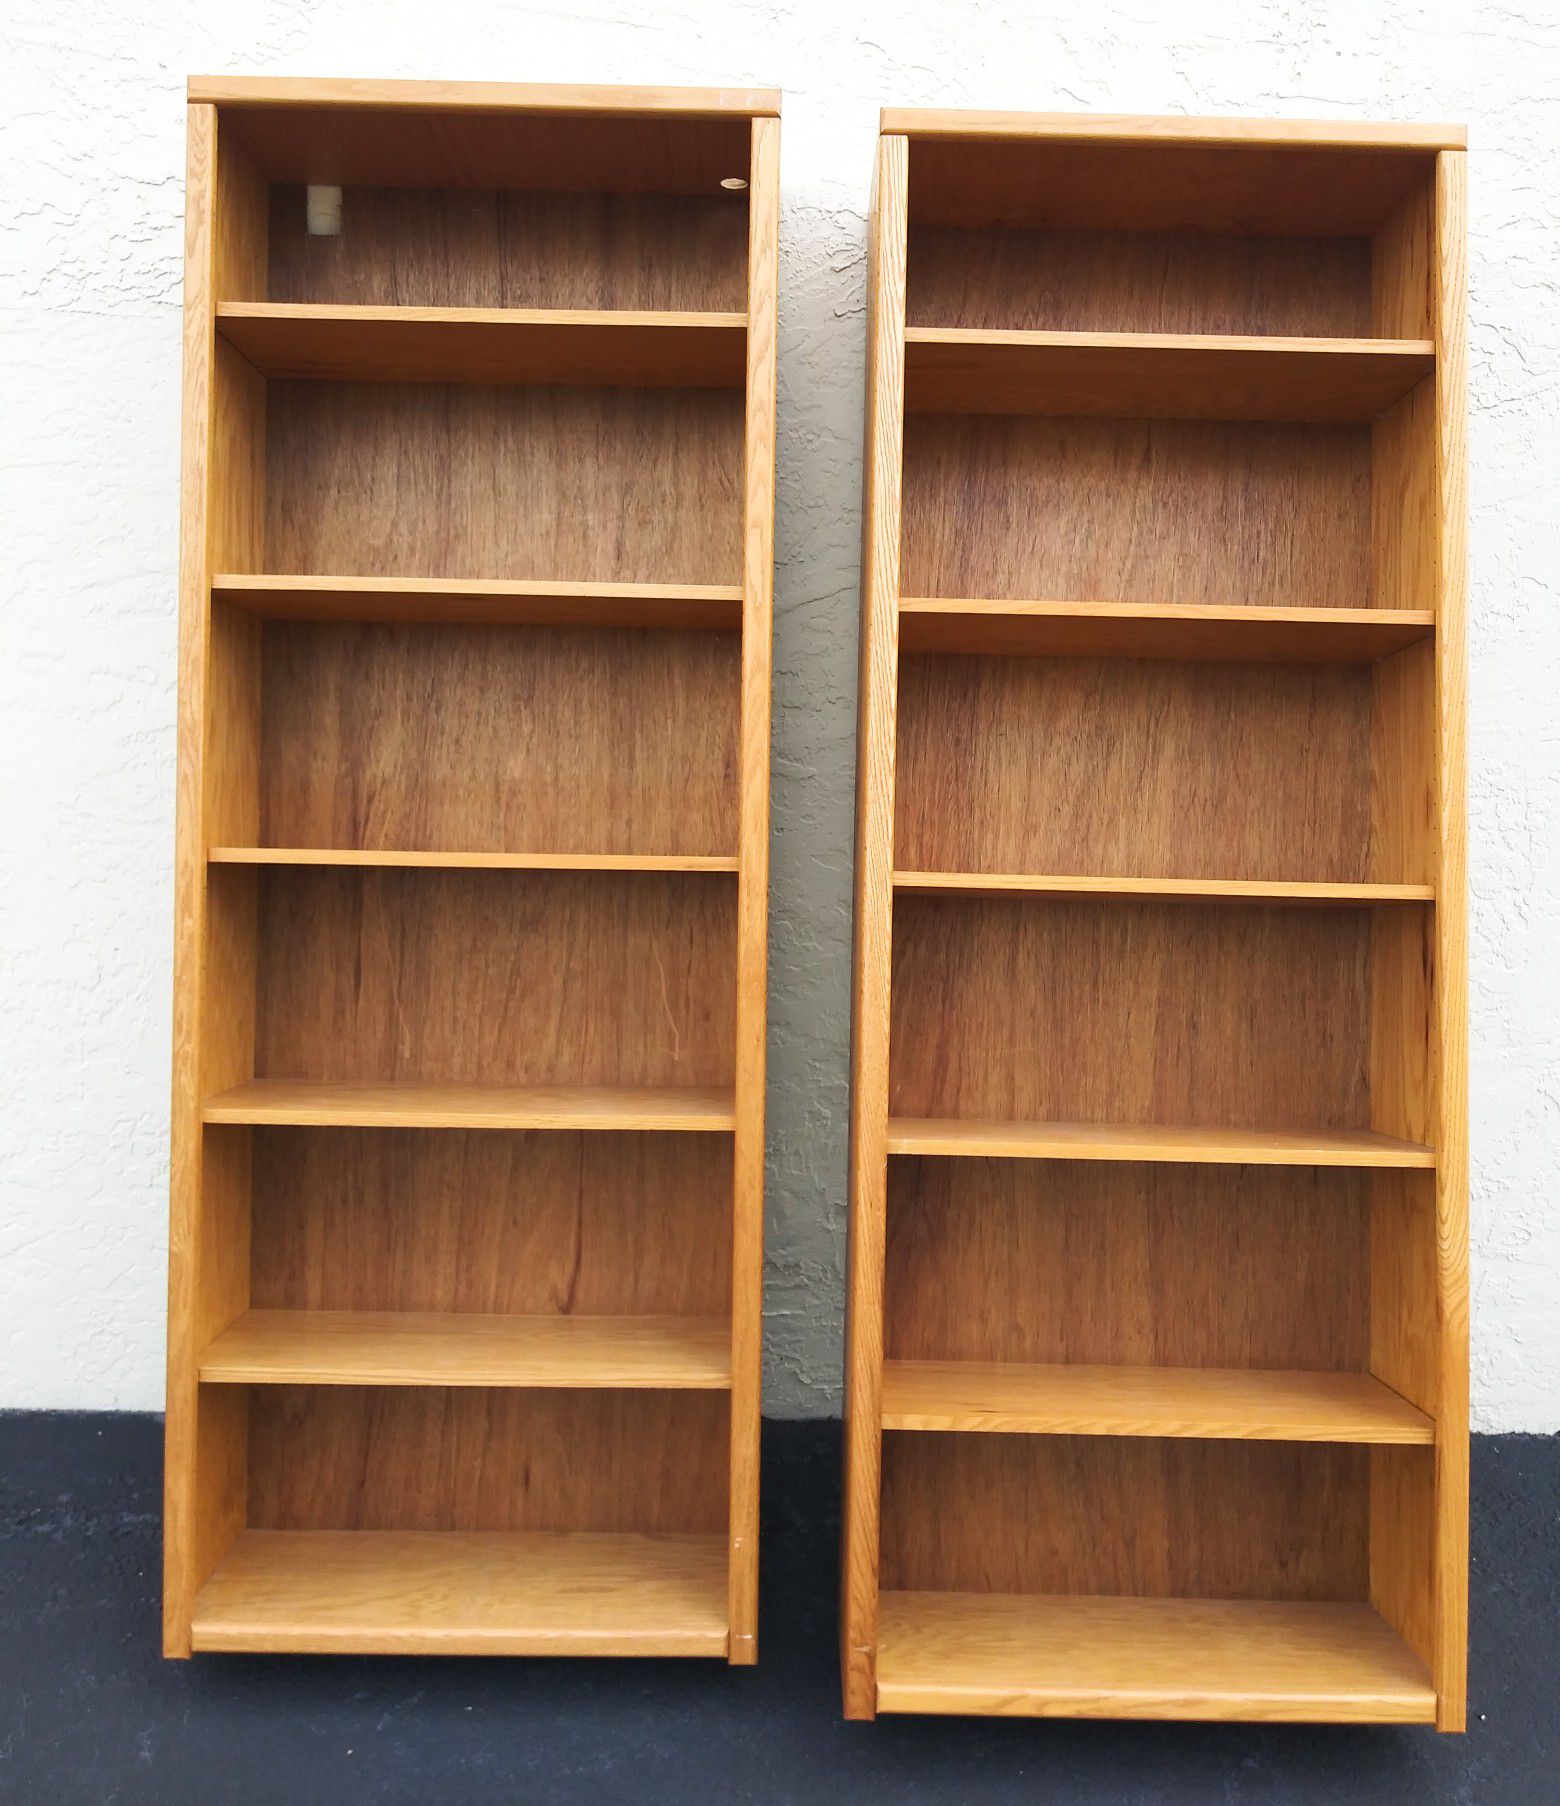 Pair of Wood Bookcases Bookshelves Shelves